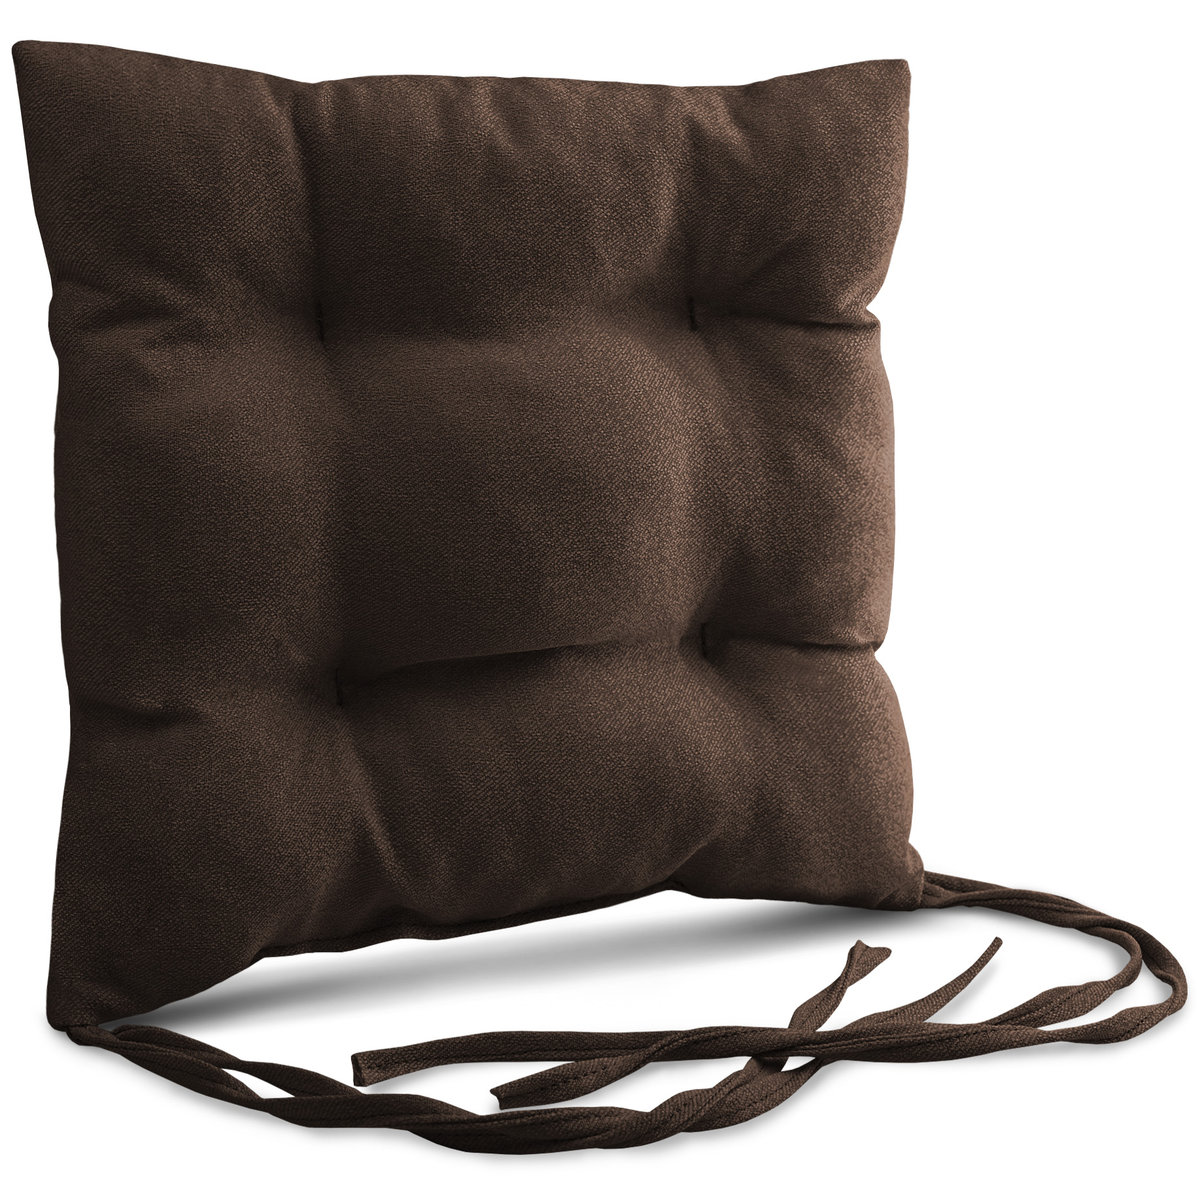 Poduszka ogrodowa na krzesło 40x40 cm w kolorze brązowym ze sznureczkami do przywiązania